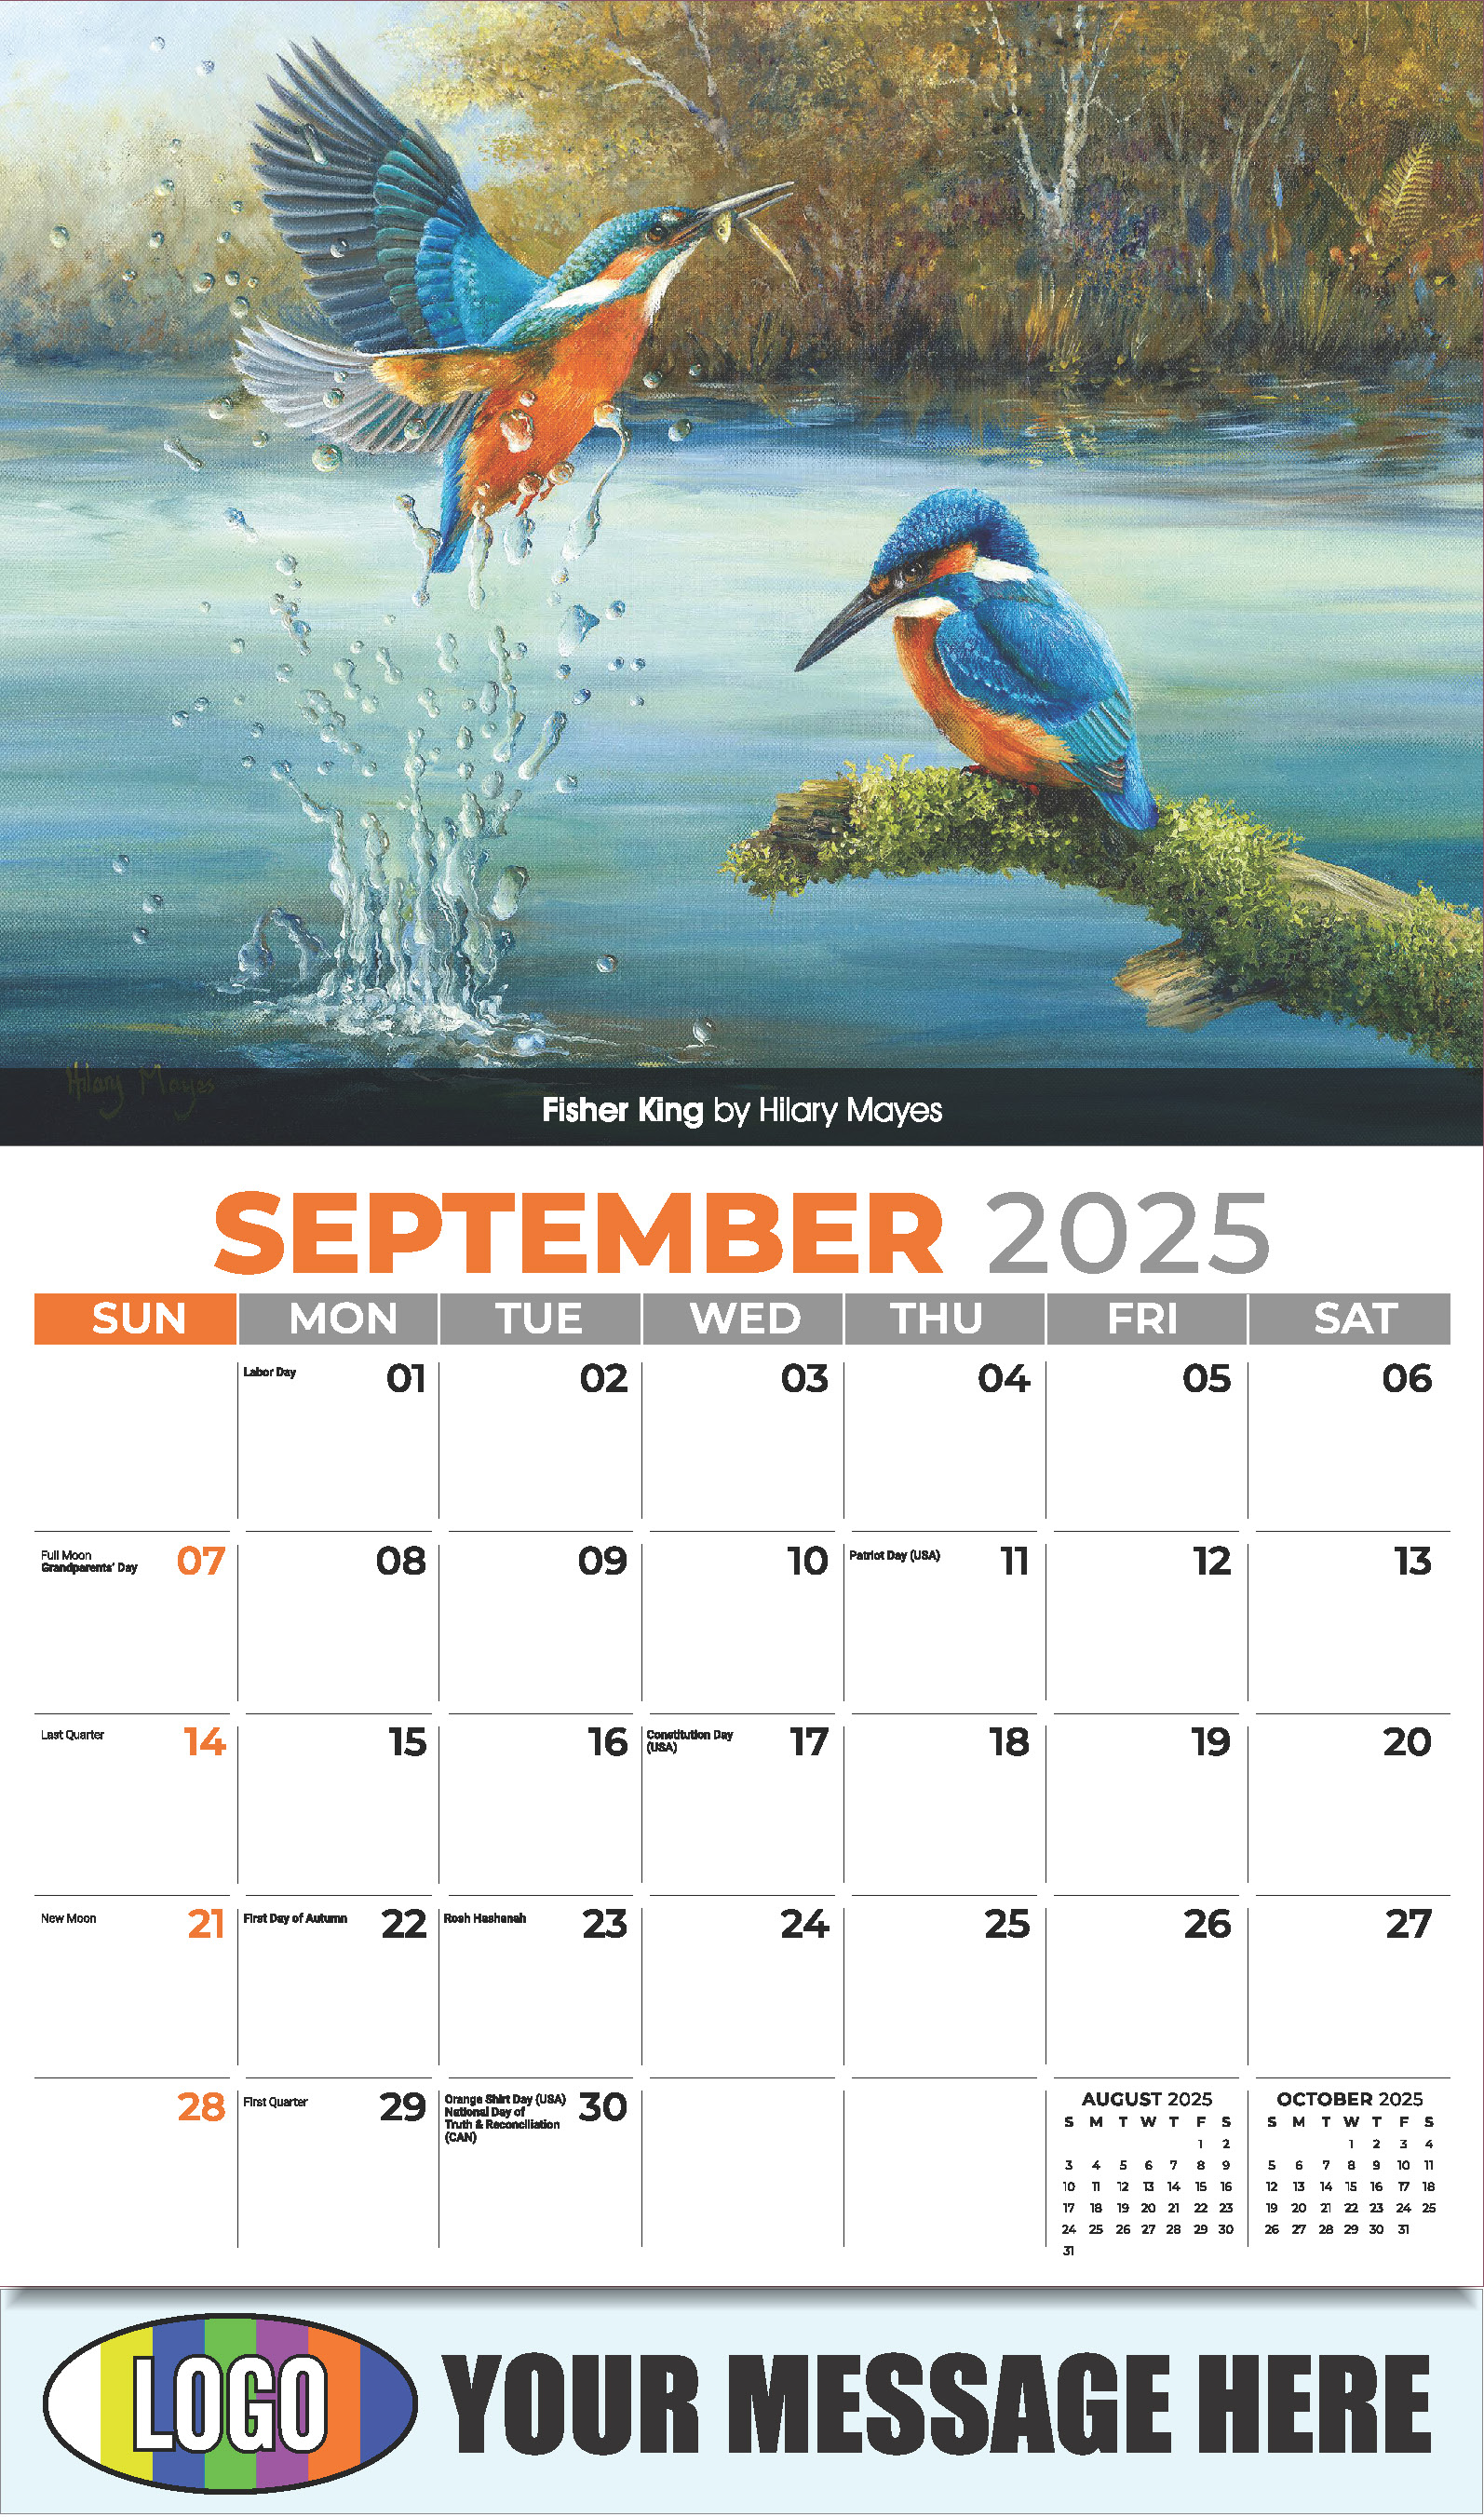 Garden Birds 2025 Business Promotional Calendar - September